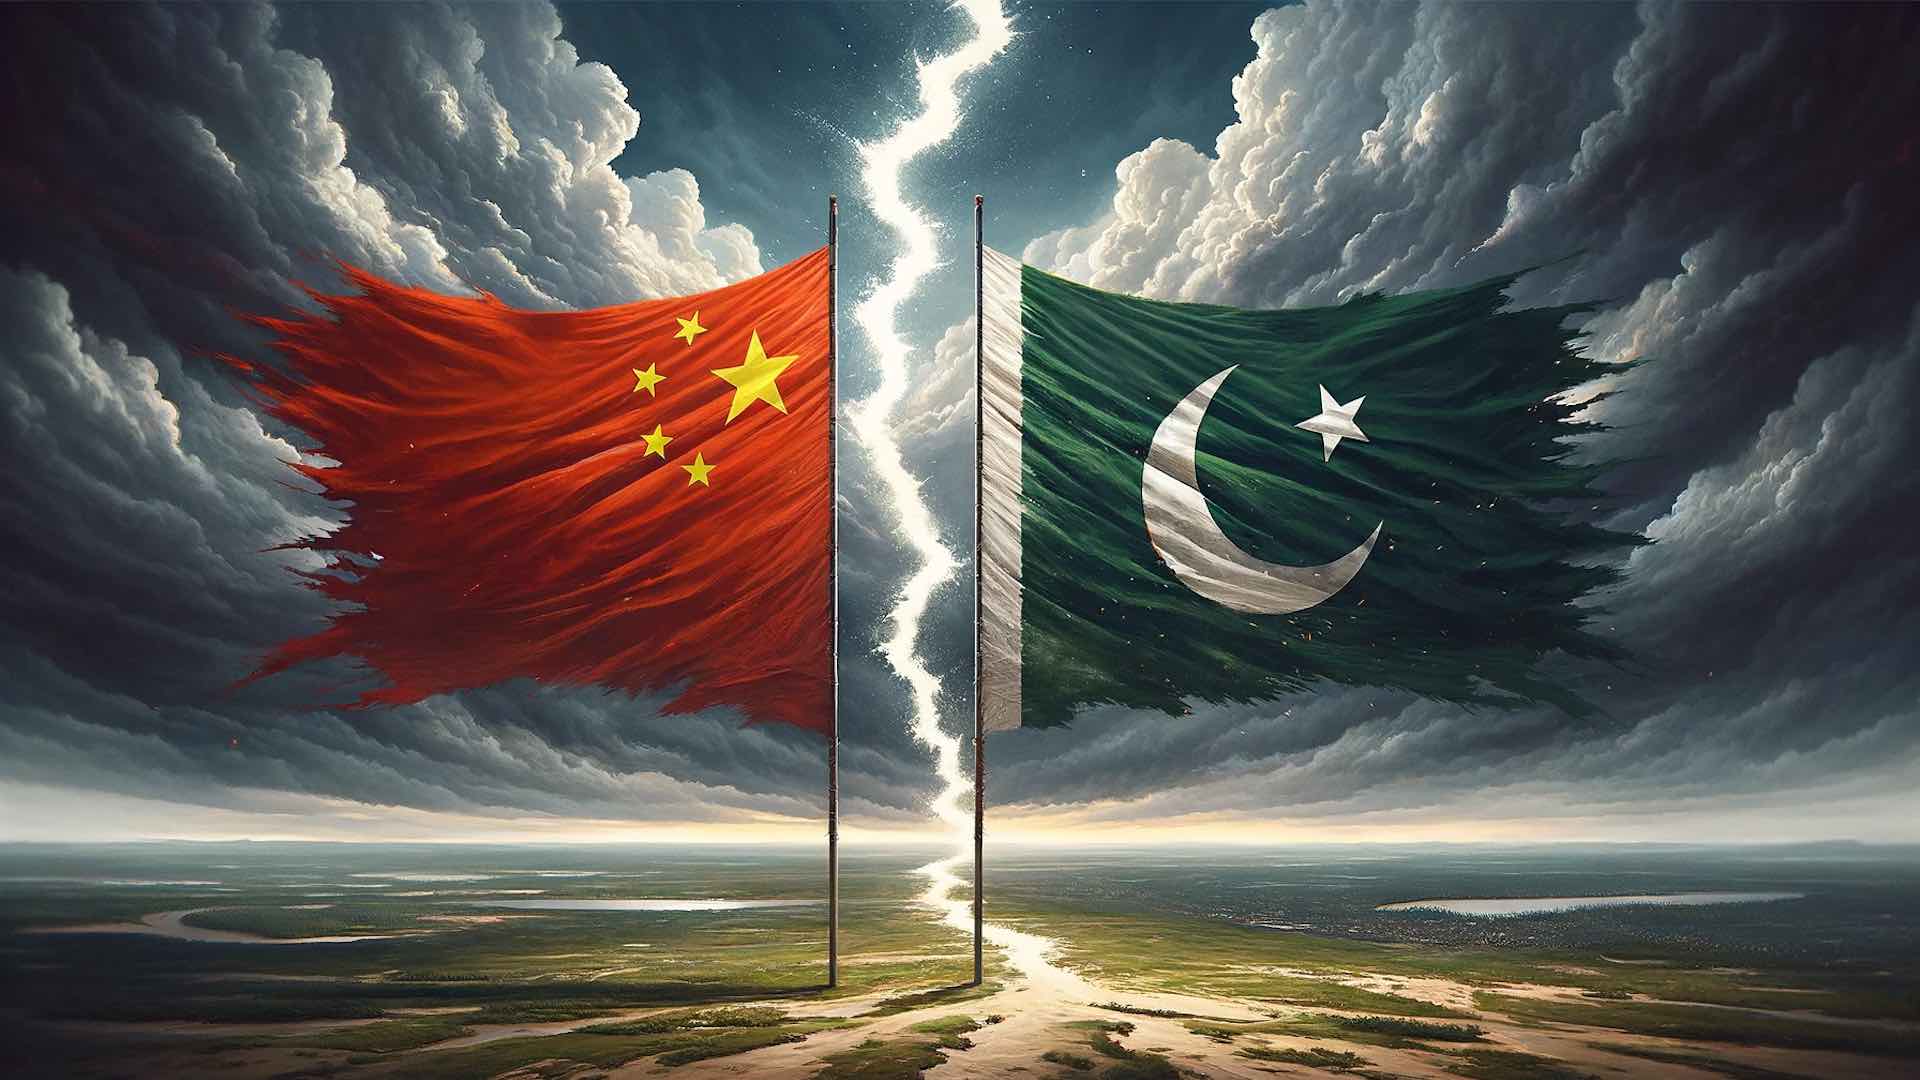 سخاوت چینی در حالی که پاکستان در بدهی پنهانی غرق می شود، نقاب بردار شد